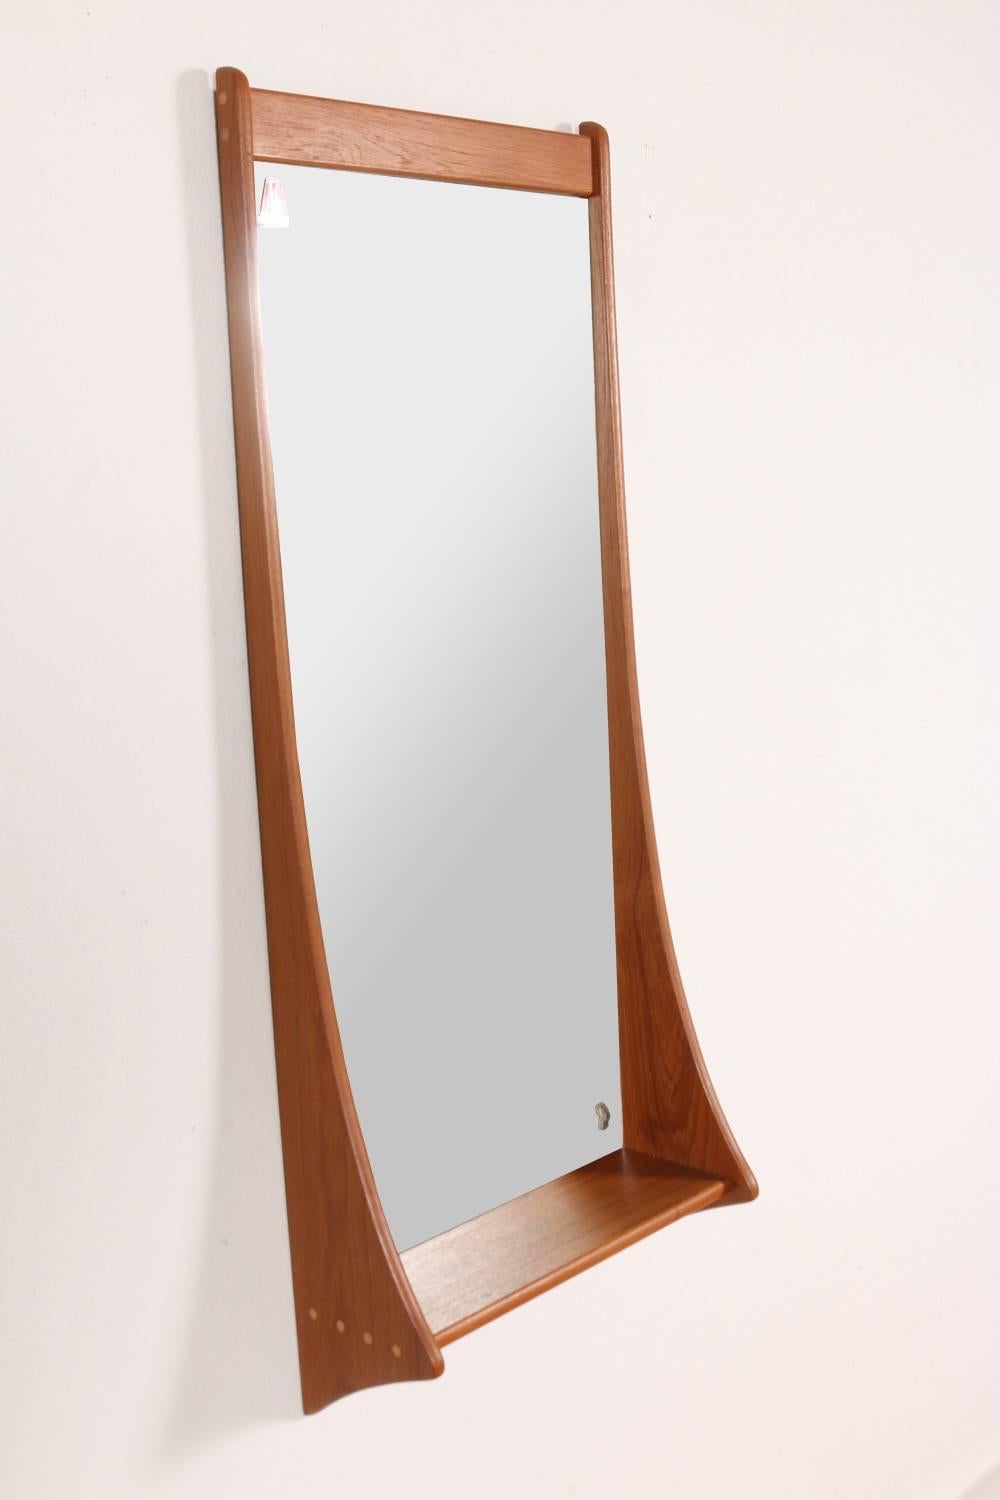 Scandinavian Modern Sculptural Teak Wall Mirror with Shelf by Pedersen and Hansen, 1950s, Denmark